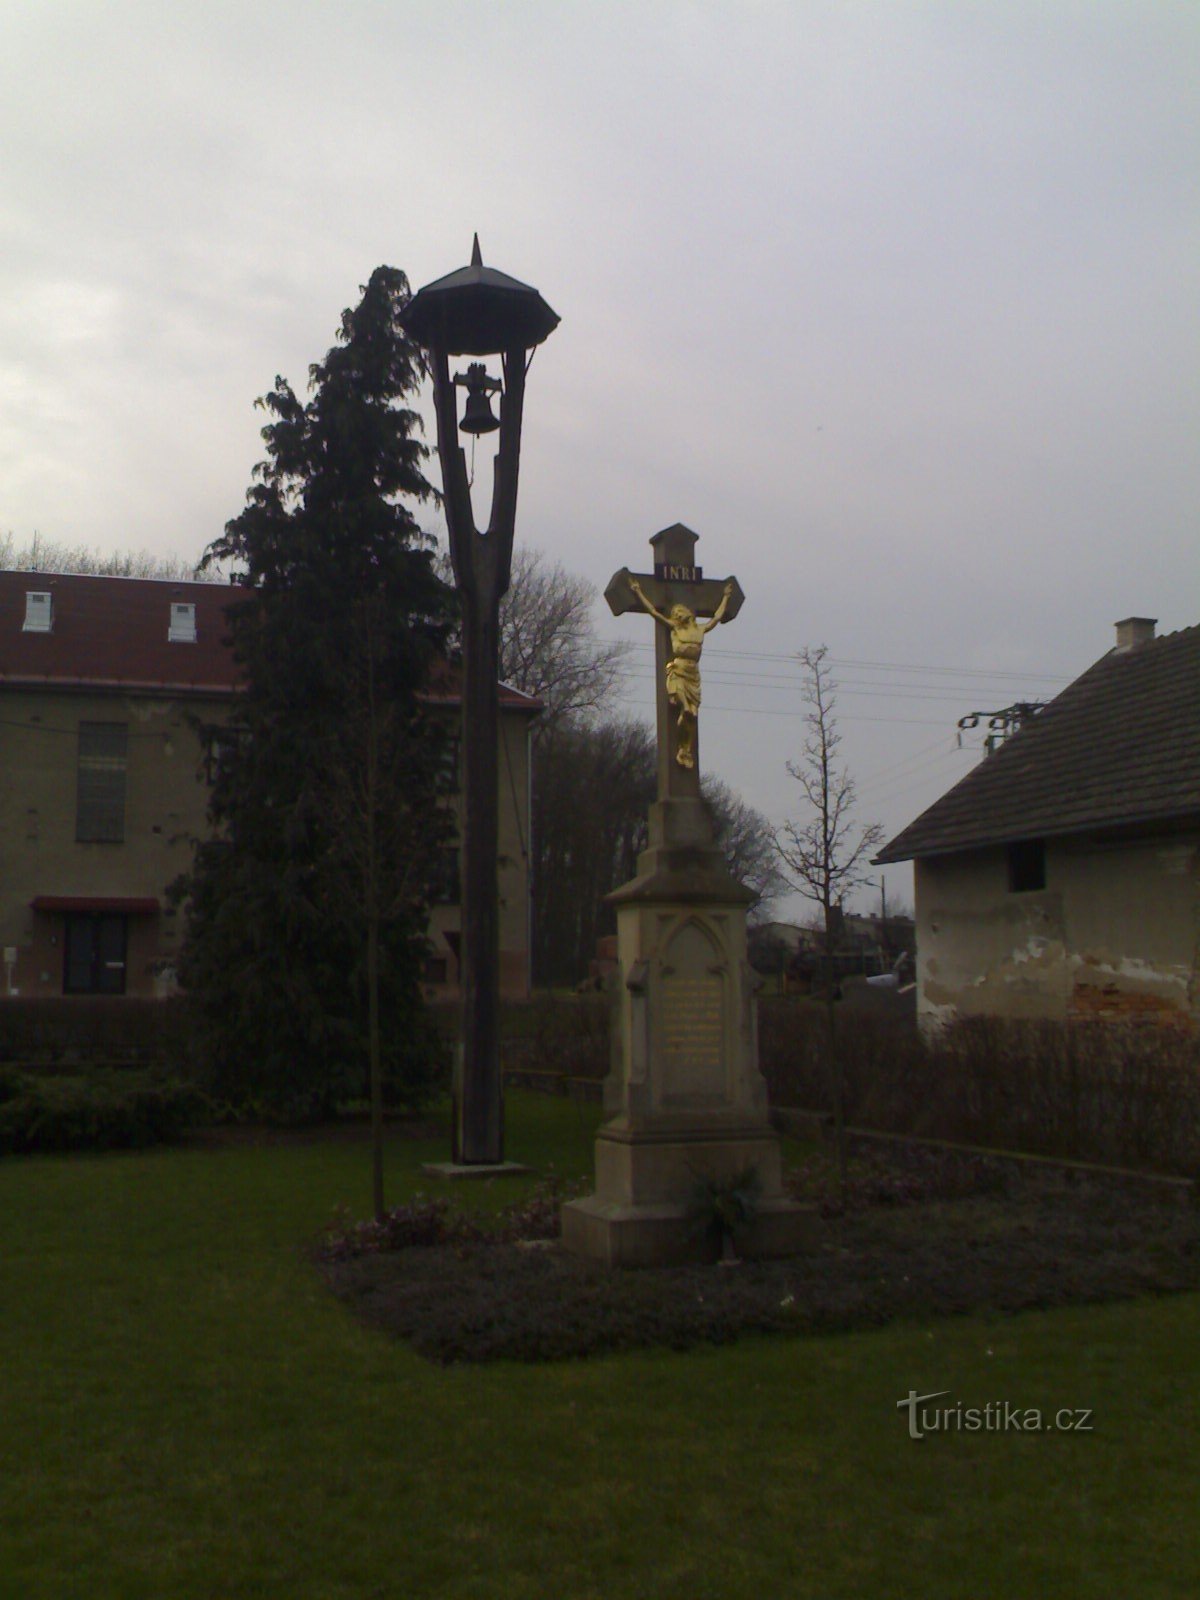 Jílovice - tháp chuông và tượng đài đóng đinh